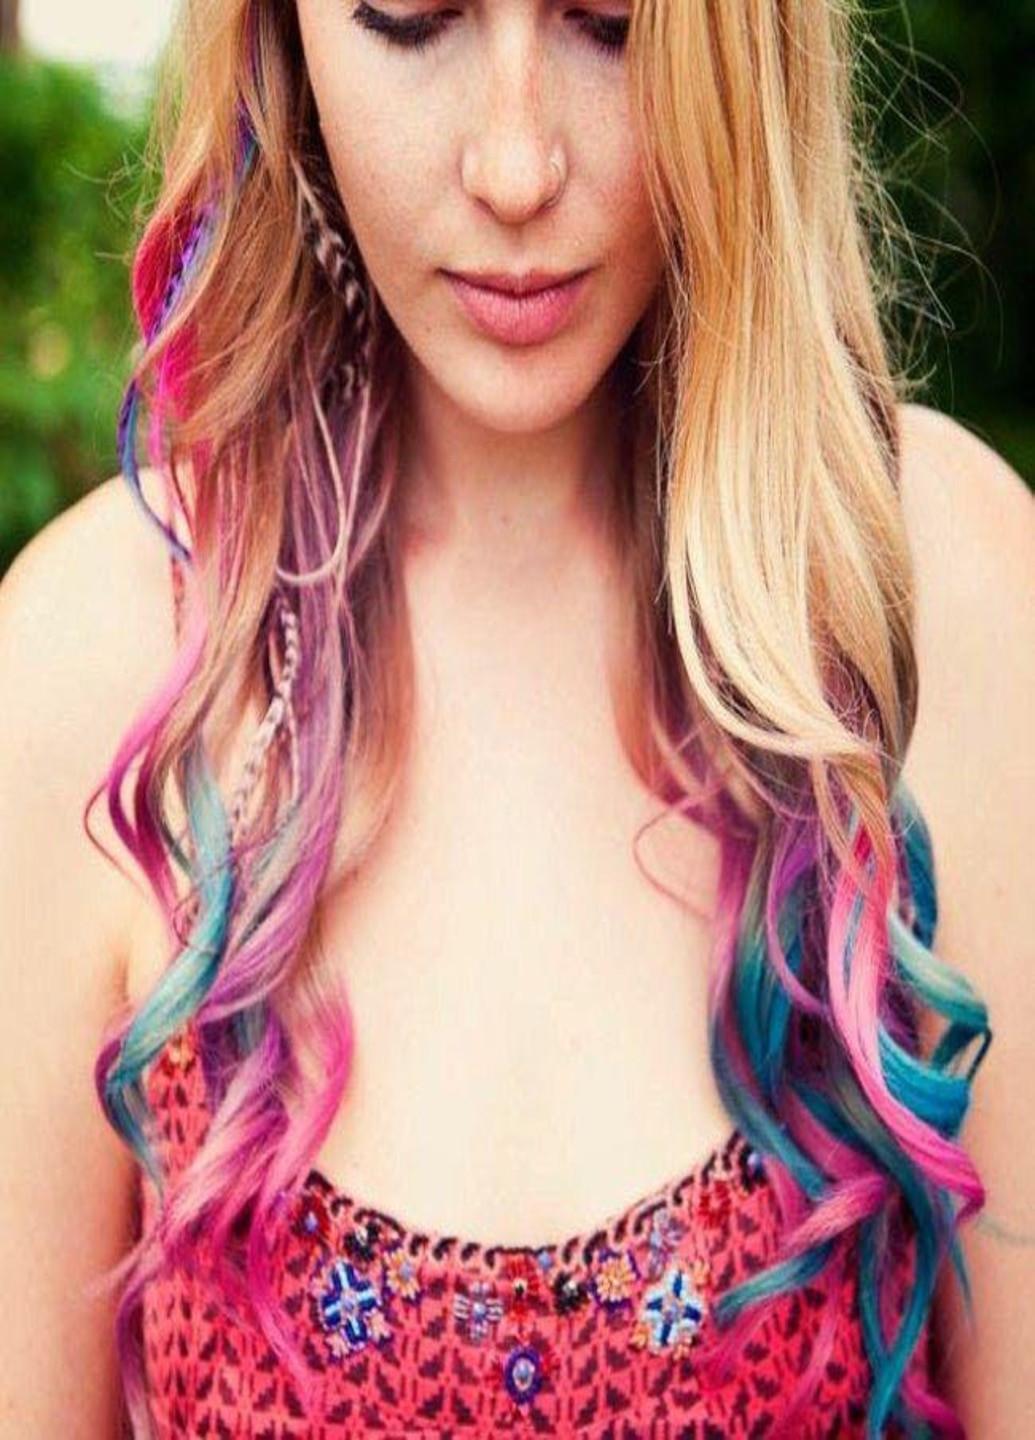 Набір кольорової крейди для волосся 12 кольорів (фарба крейда Hair chalk) (912765 Francesco Marconi (213875538)